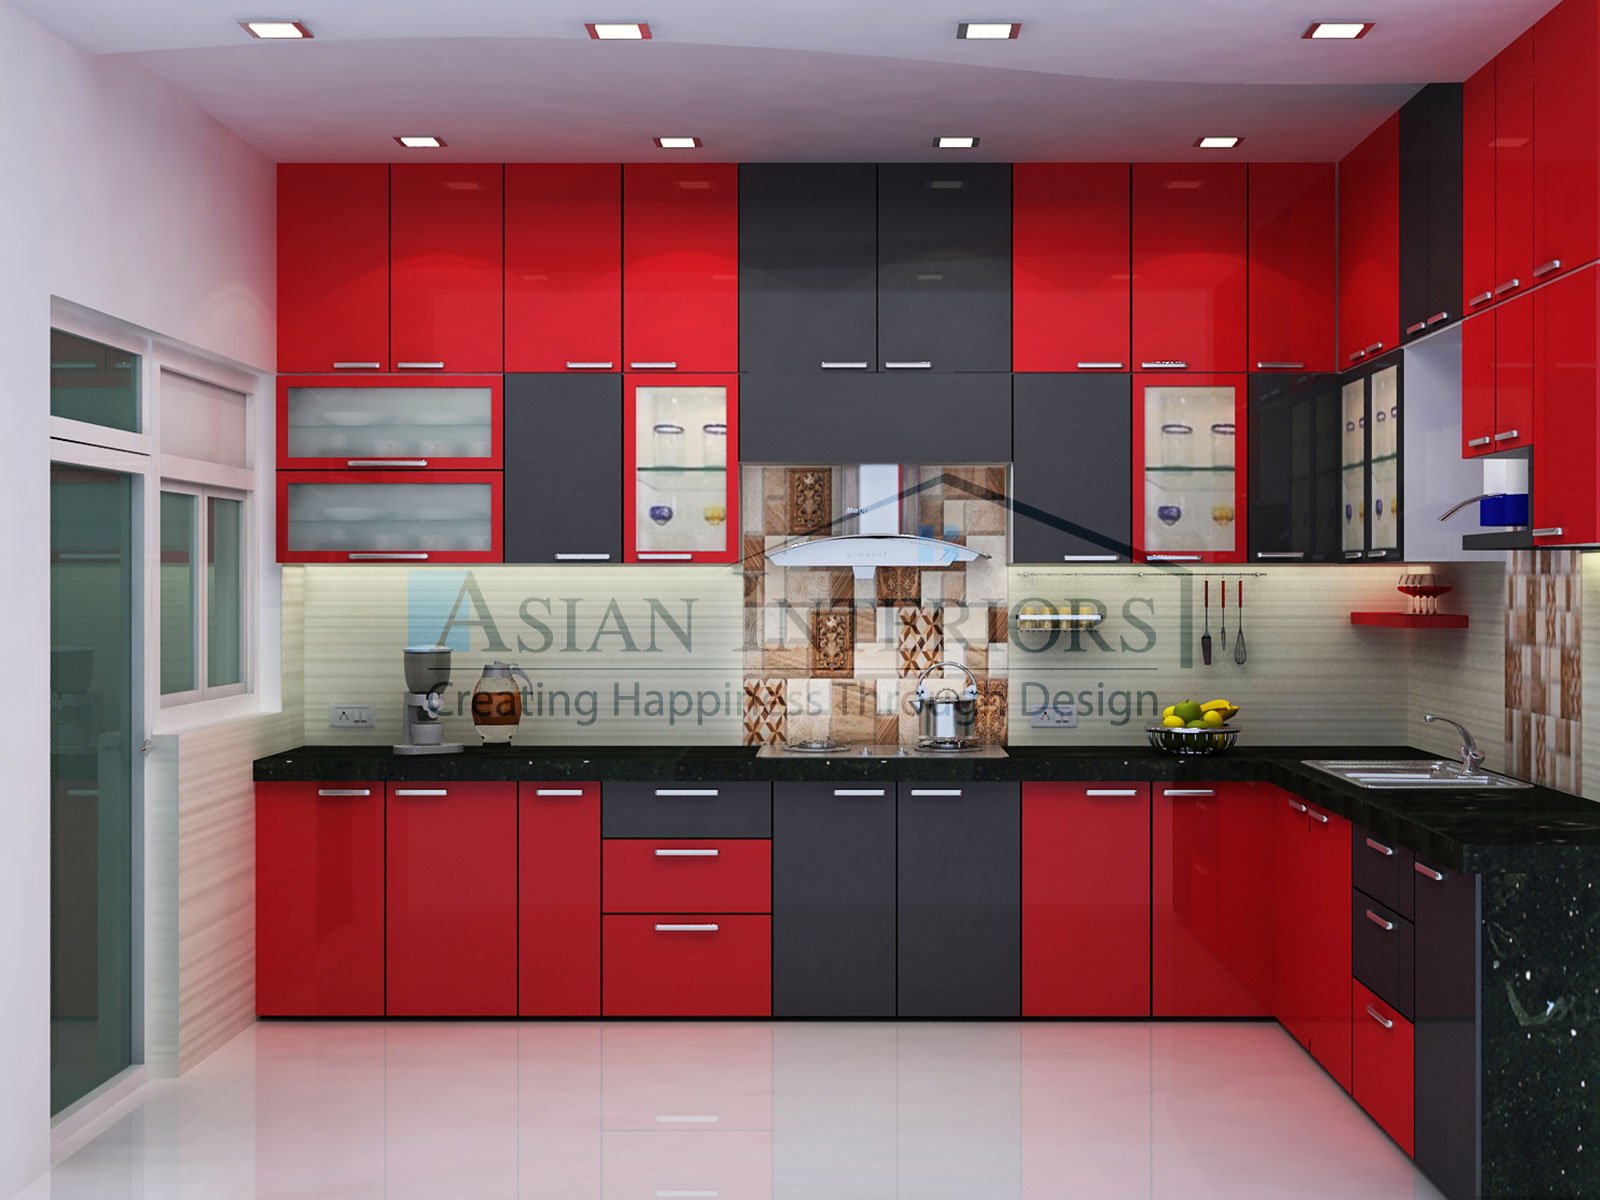 Asian-Interiors-Kitchen10